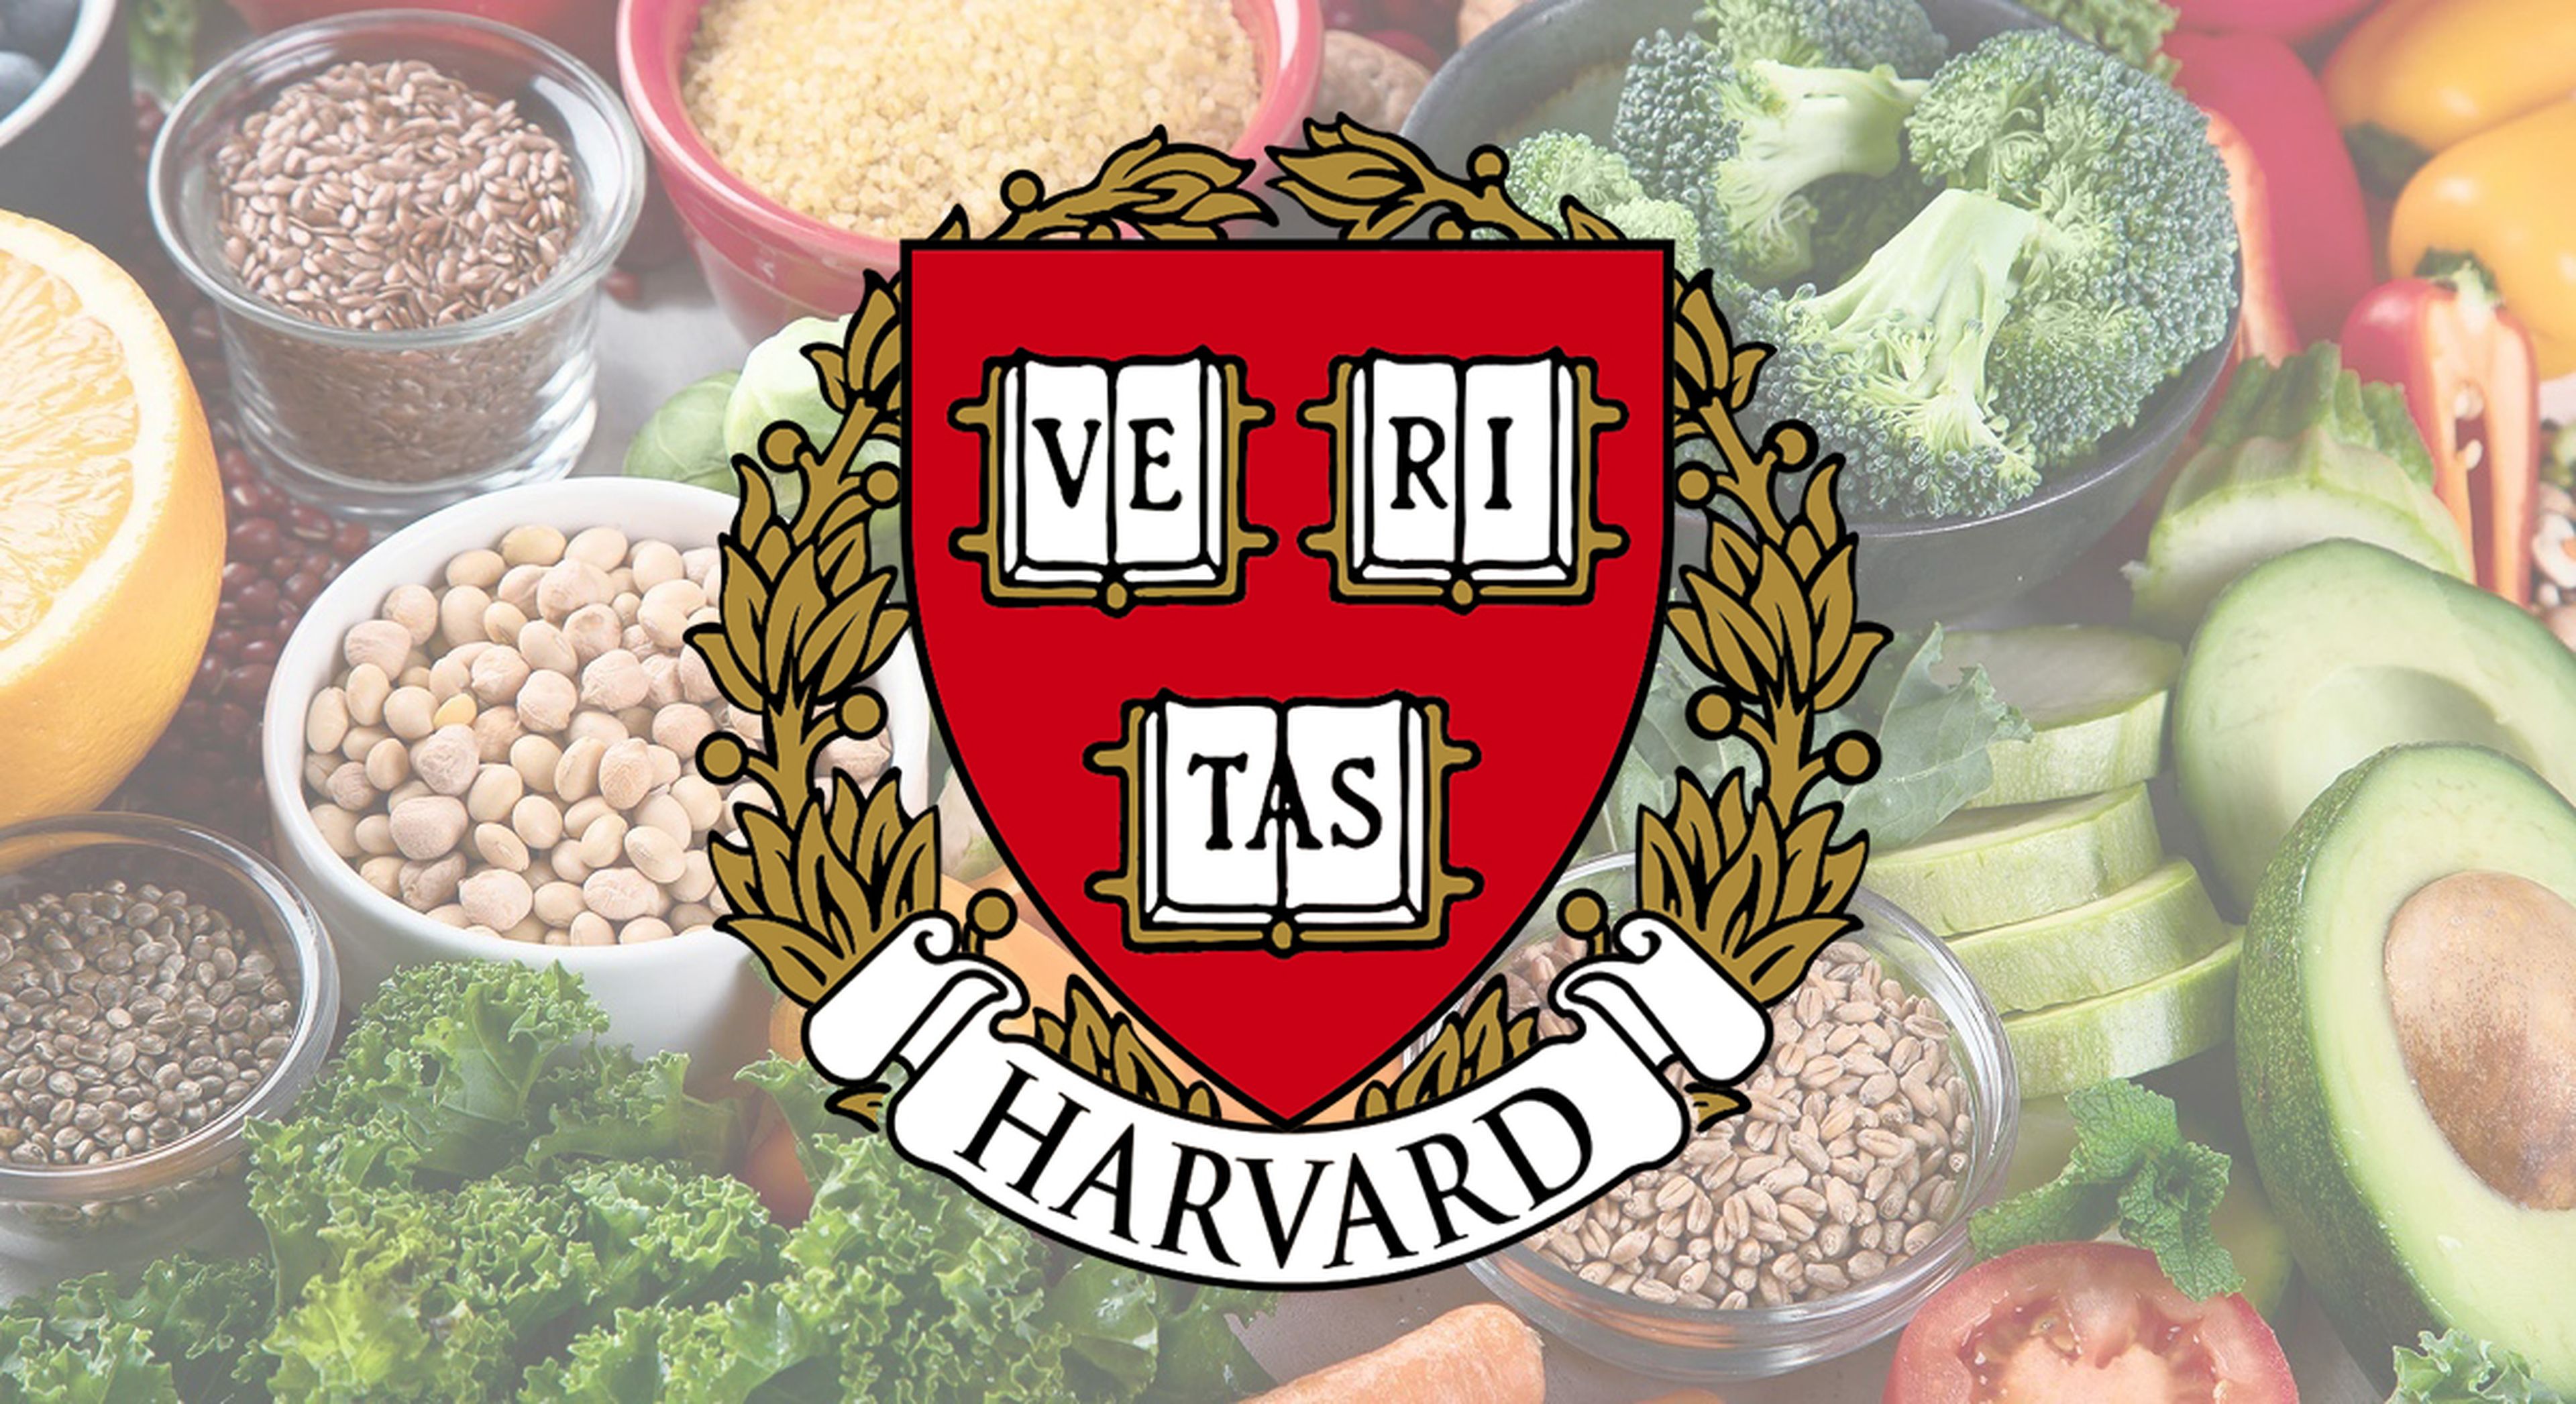 Los mejores alimentos para reducir el colesterol, según la Universidad de Harvard